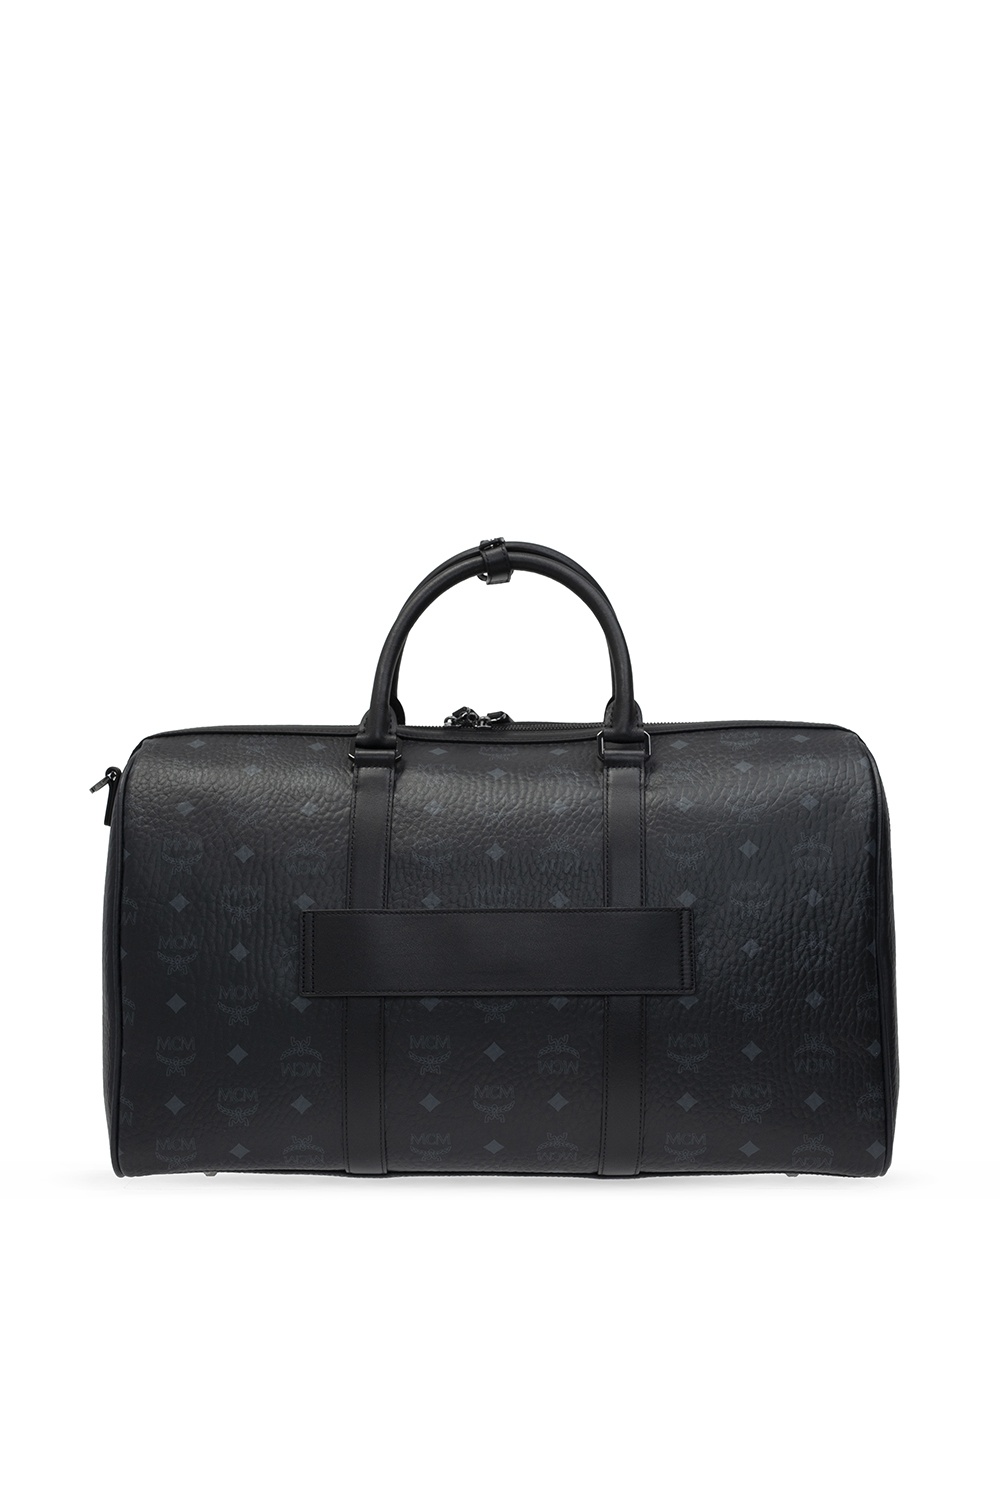 LOUIS VUITTON 21" Damier Ebene XL Duffle Carryall Suitcase